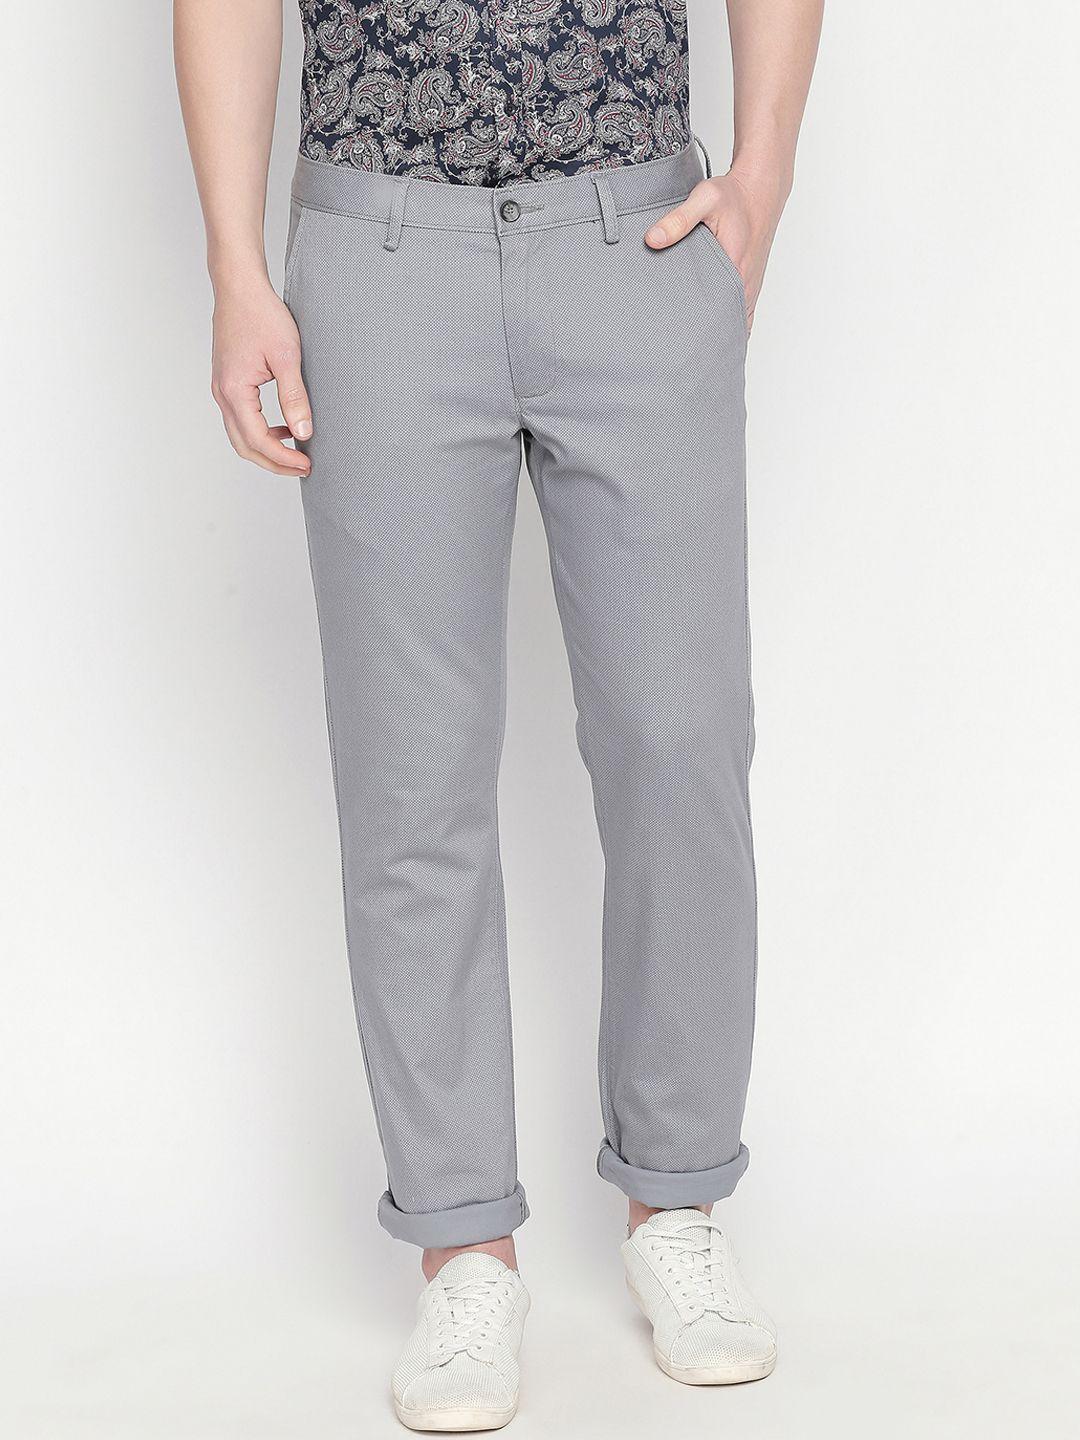 basics men grey tapered fit printed regular trousers